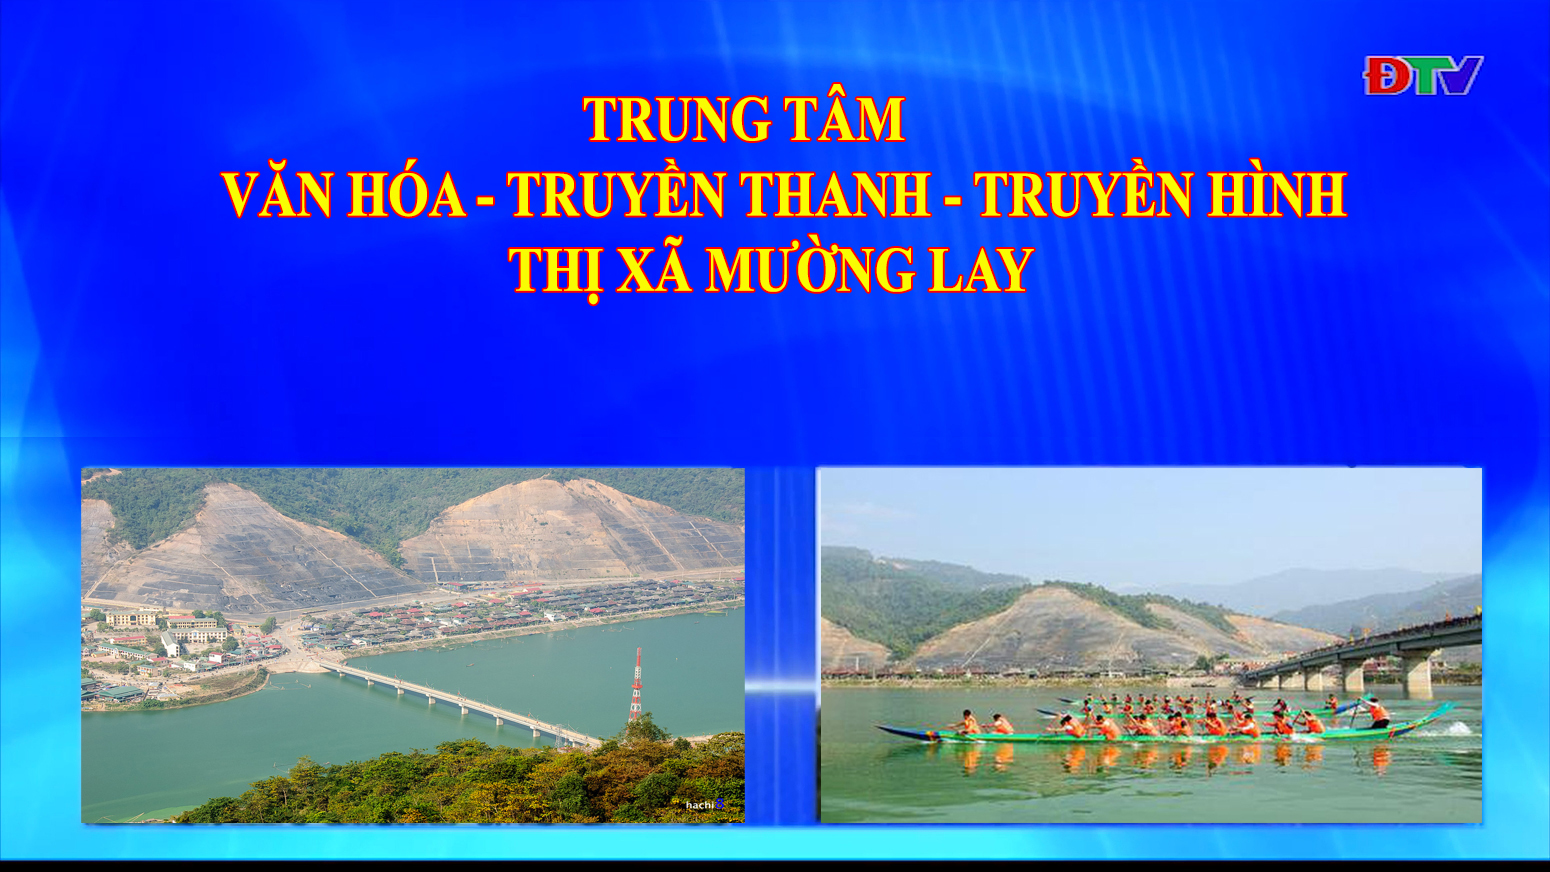 Trung tâm VH-TTTH thị xã Mường Lay (Ngày 9-9-2022)